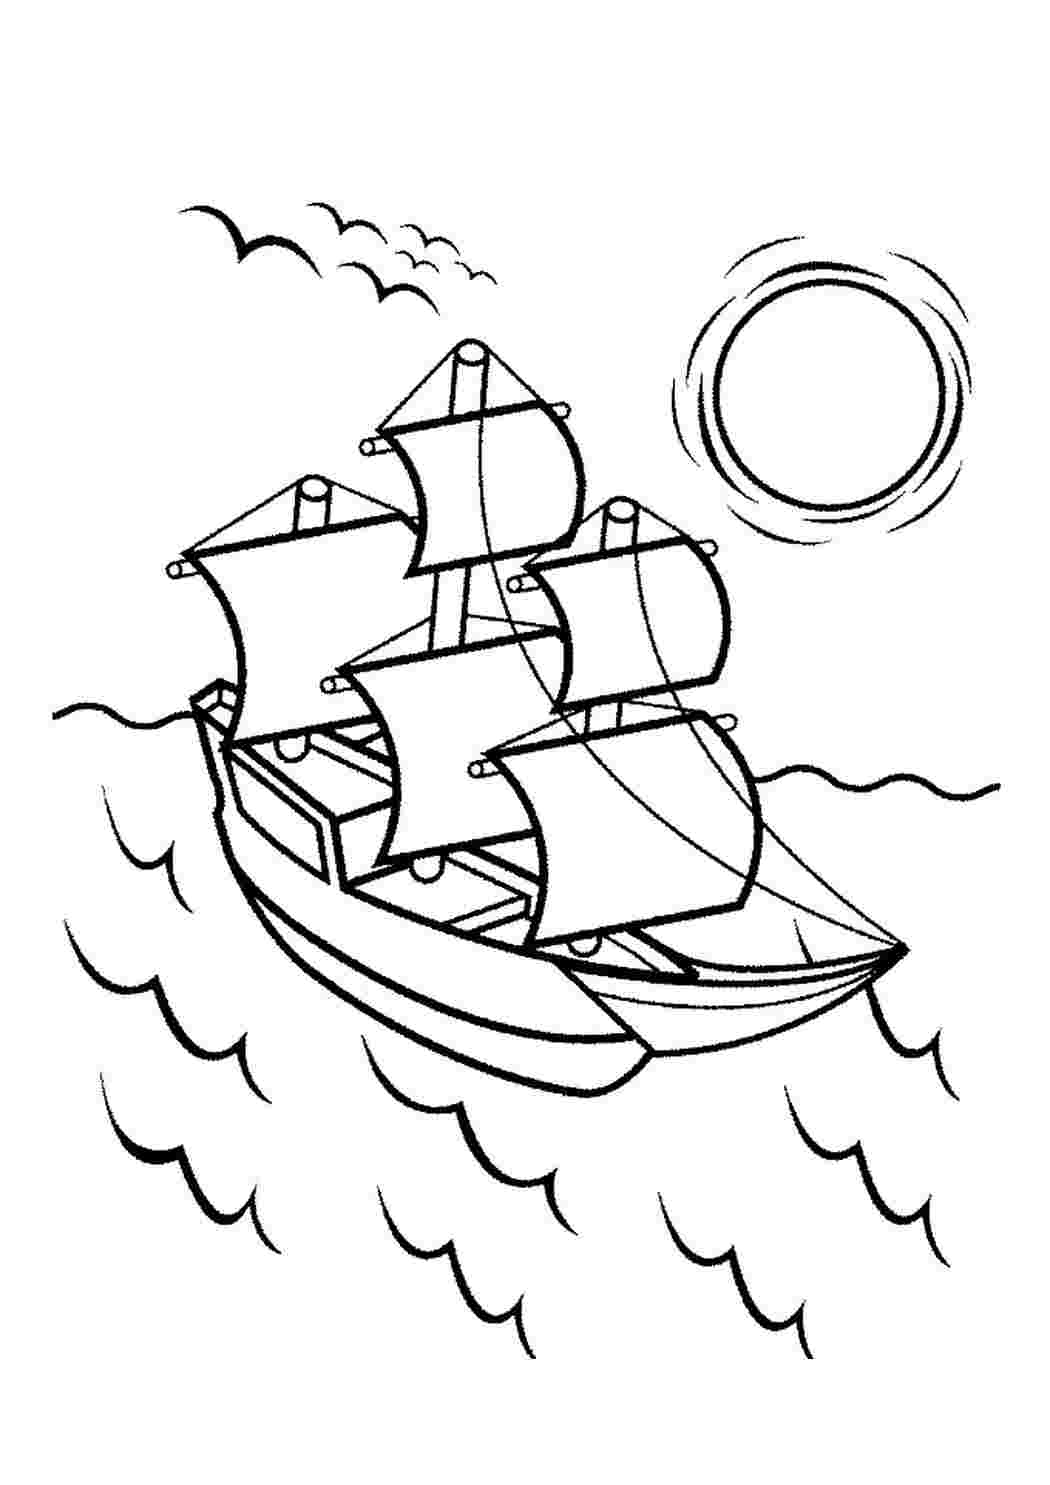 Раскраски Раскраска Раскраска корабль в море распечатать. Скачать раскраски бесплатно. Раскраска Раскраска корабль в море распечатать. Раскраски для развития.